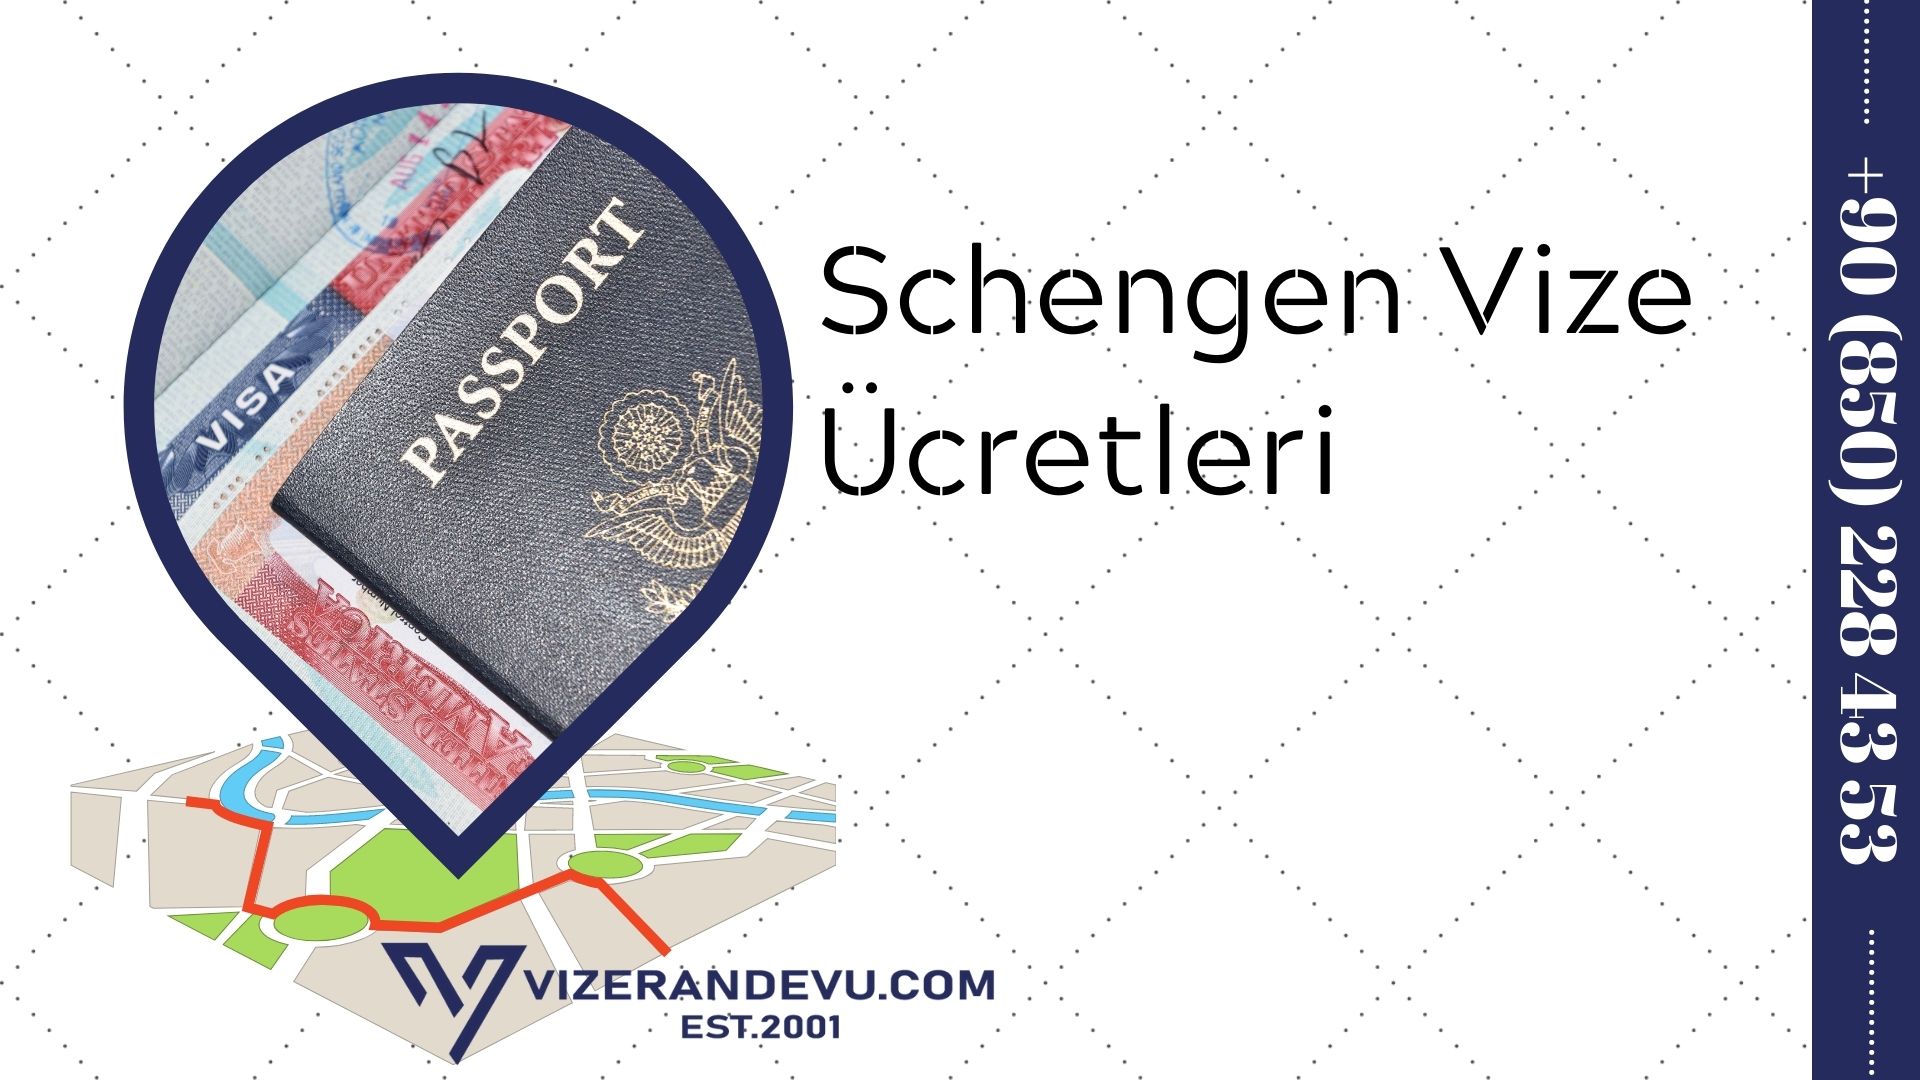 Schengen Vize Ücretleri 2021